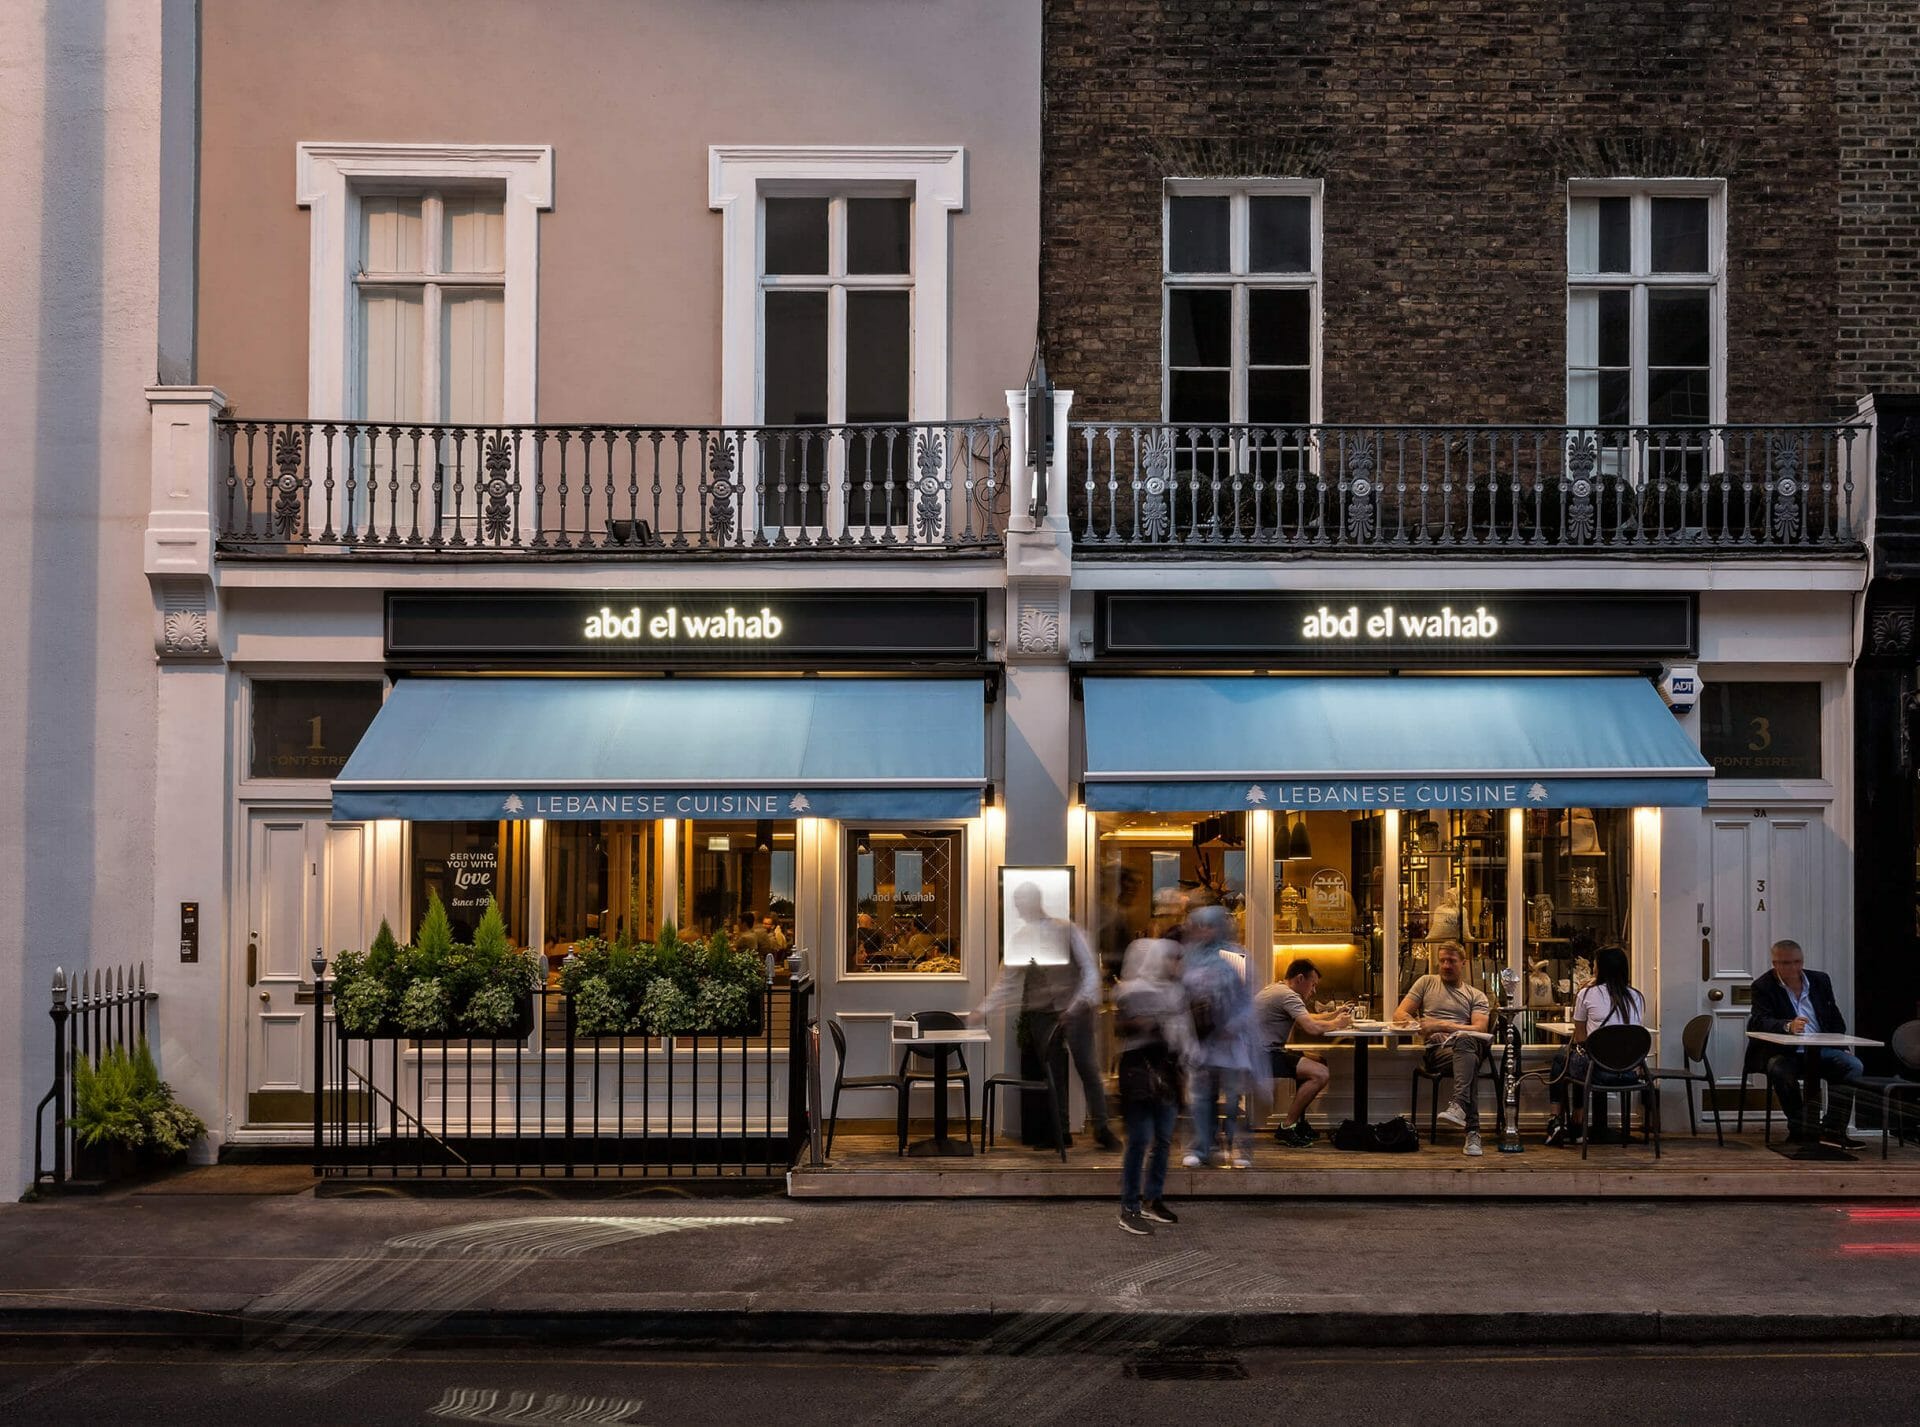 سلسلة مطاعم عبد الوهاب اللبنانية في لندن 